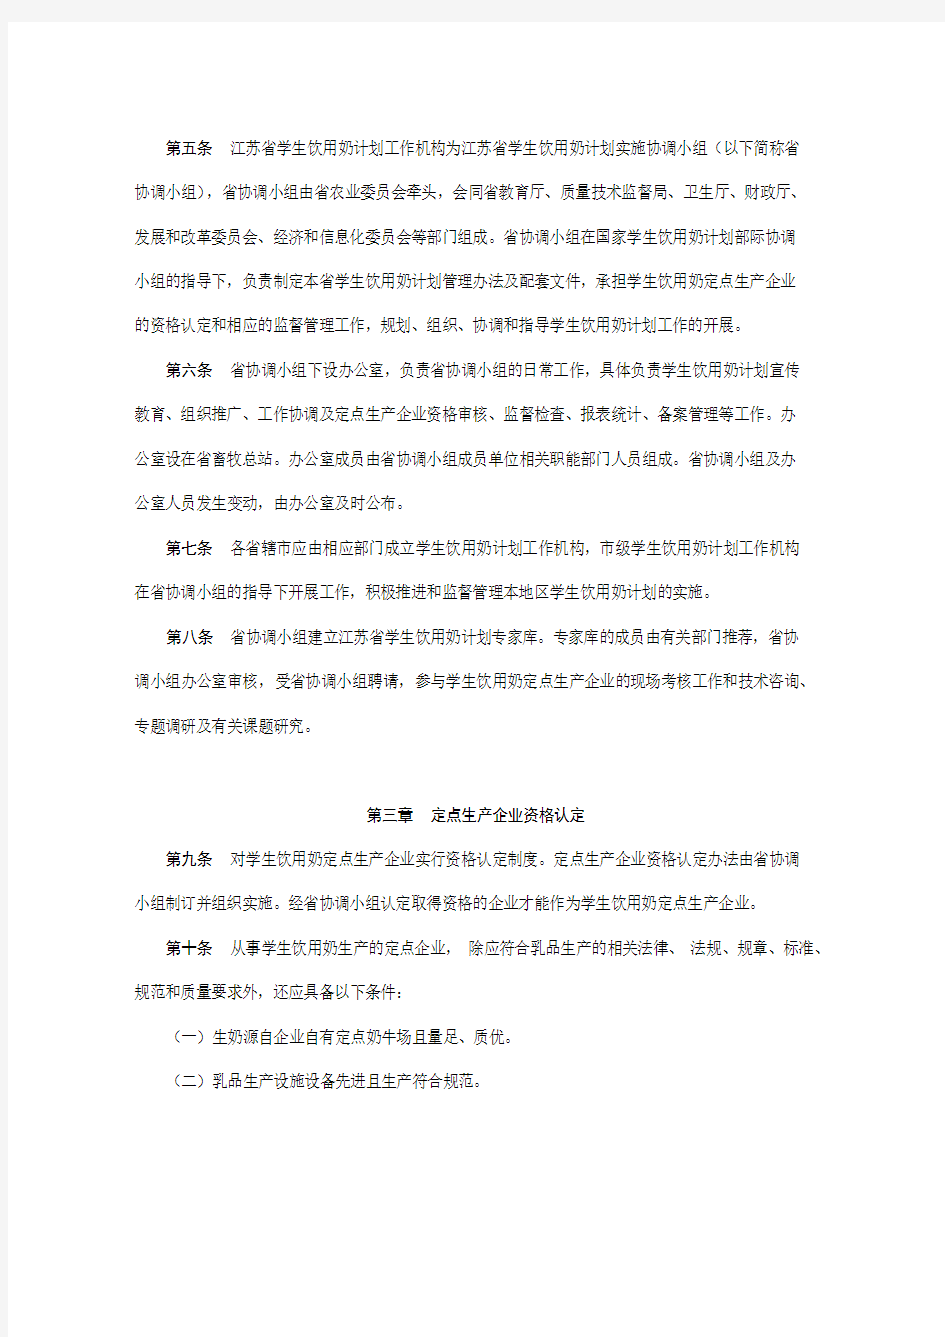 江苏省学生饮用奶计划管理办法苏农规号